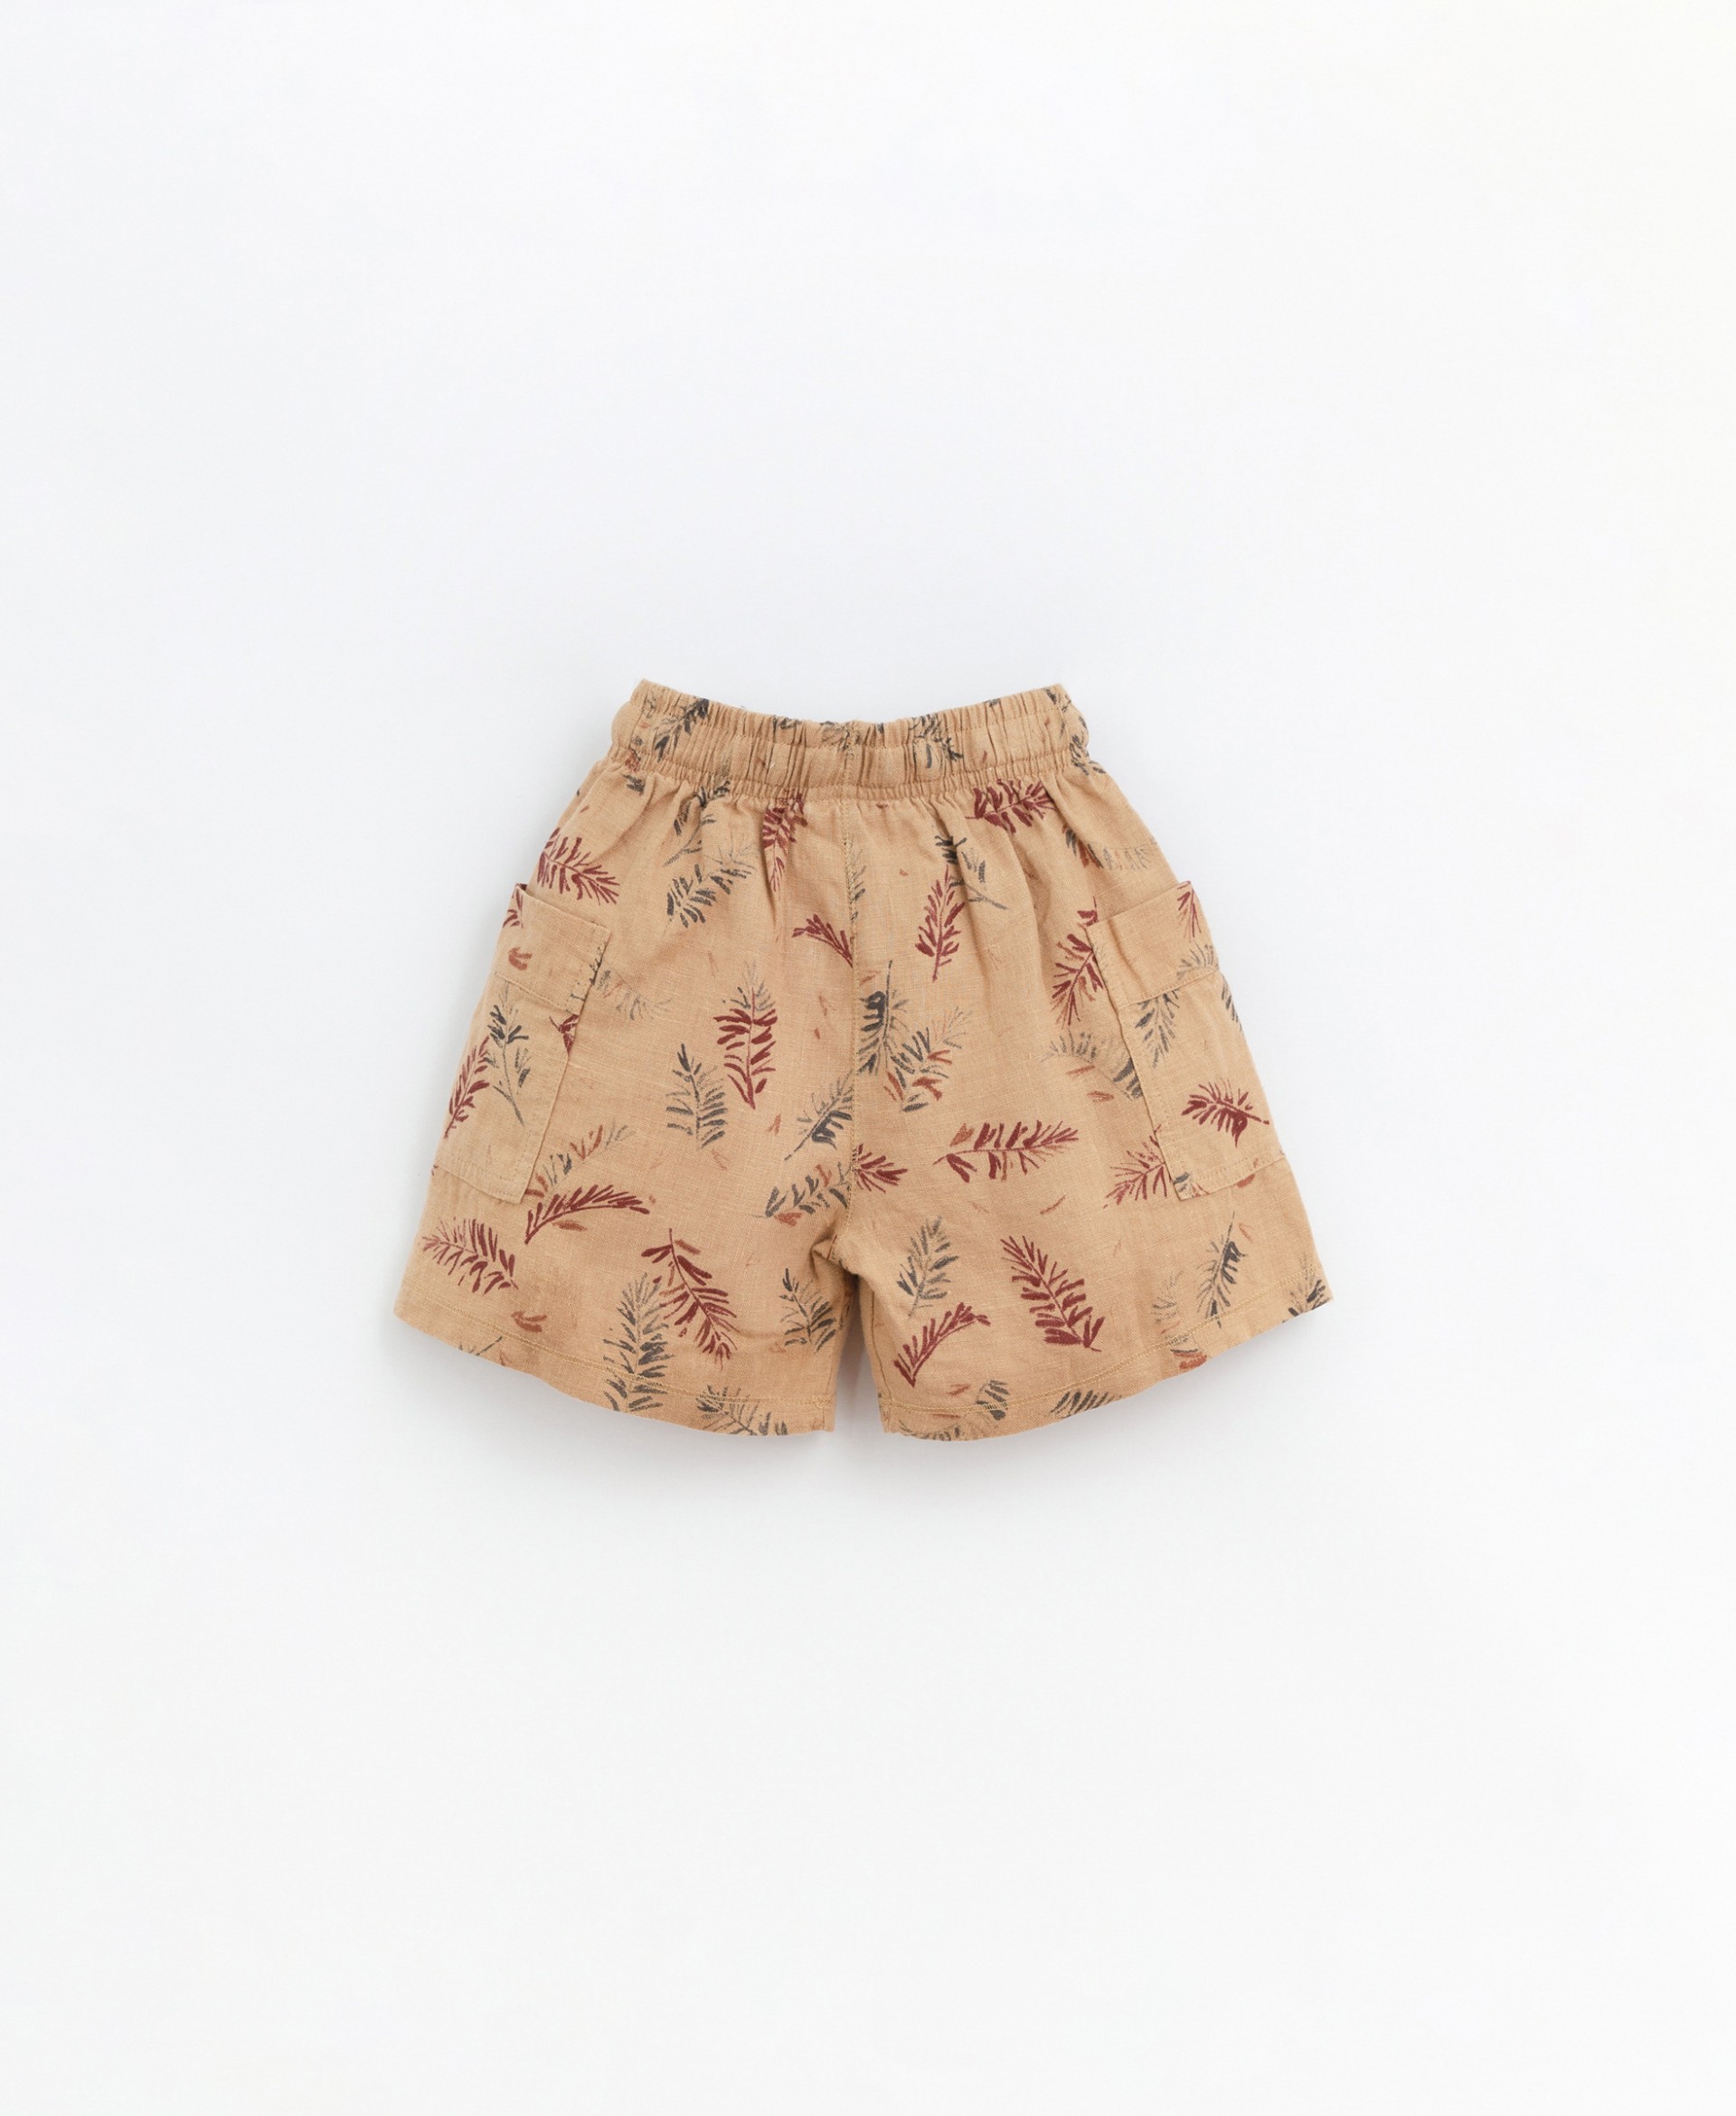 Pantalones cortos con estampado de pinos | Basketry